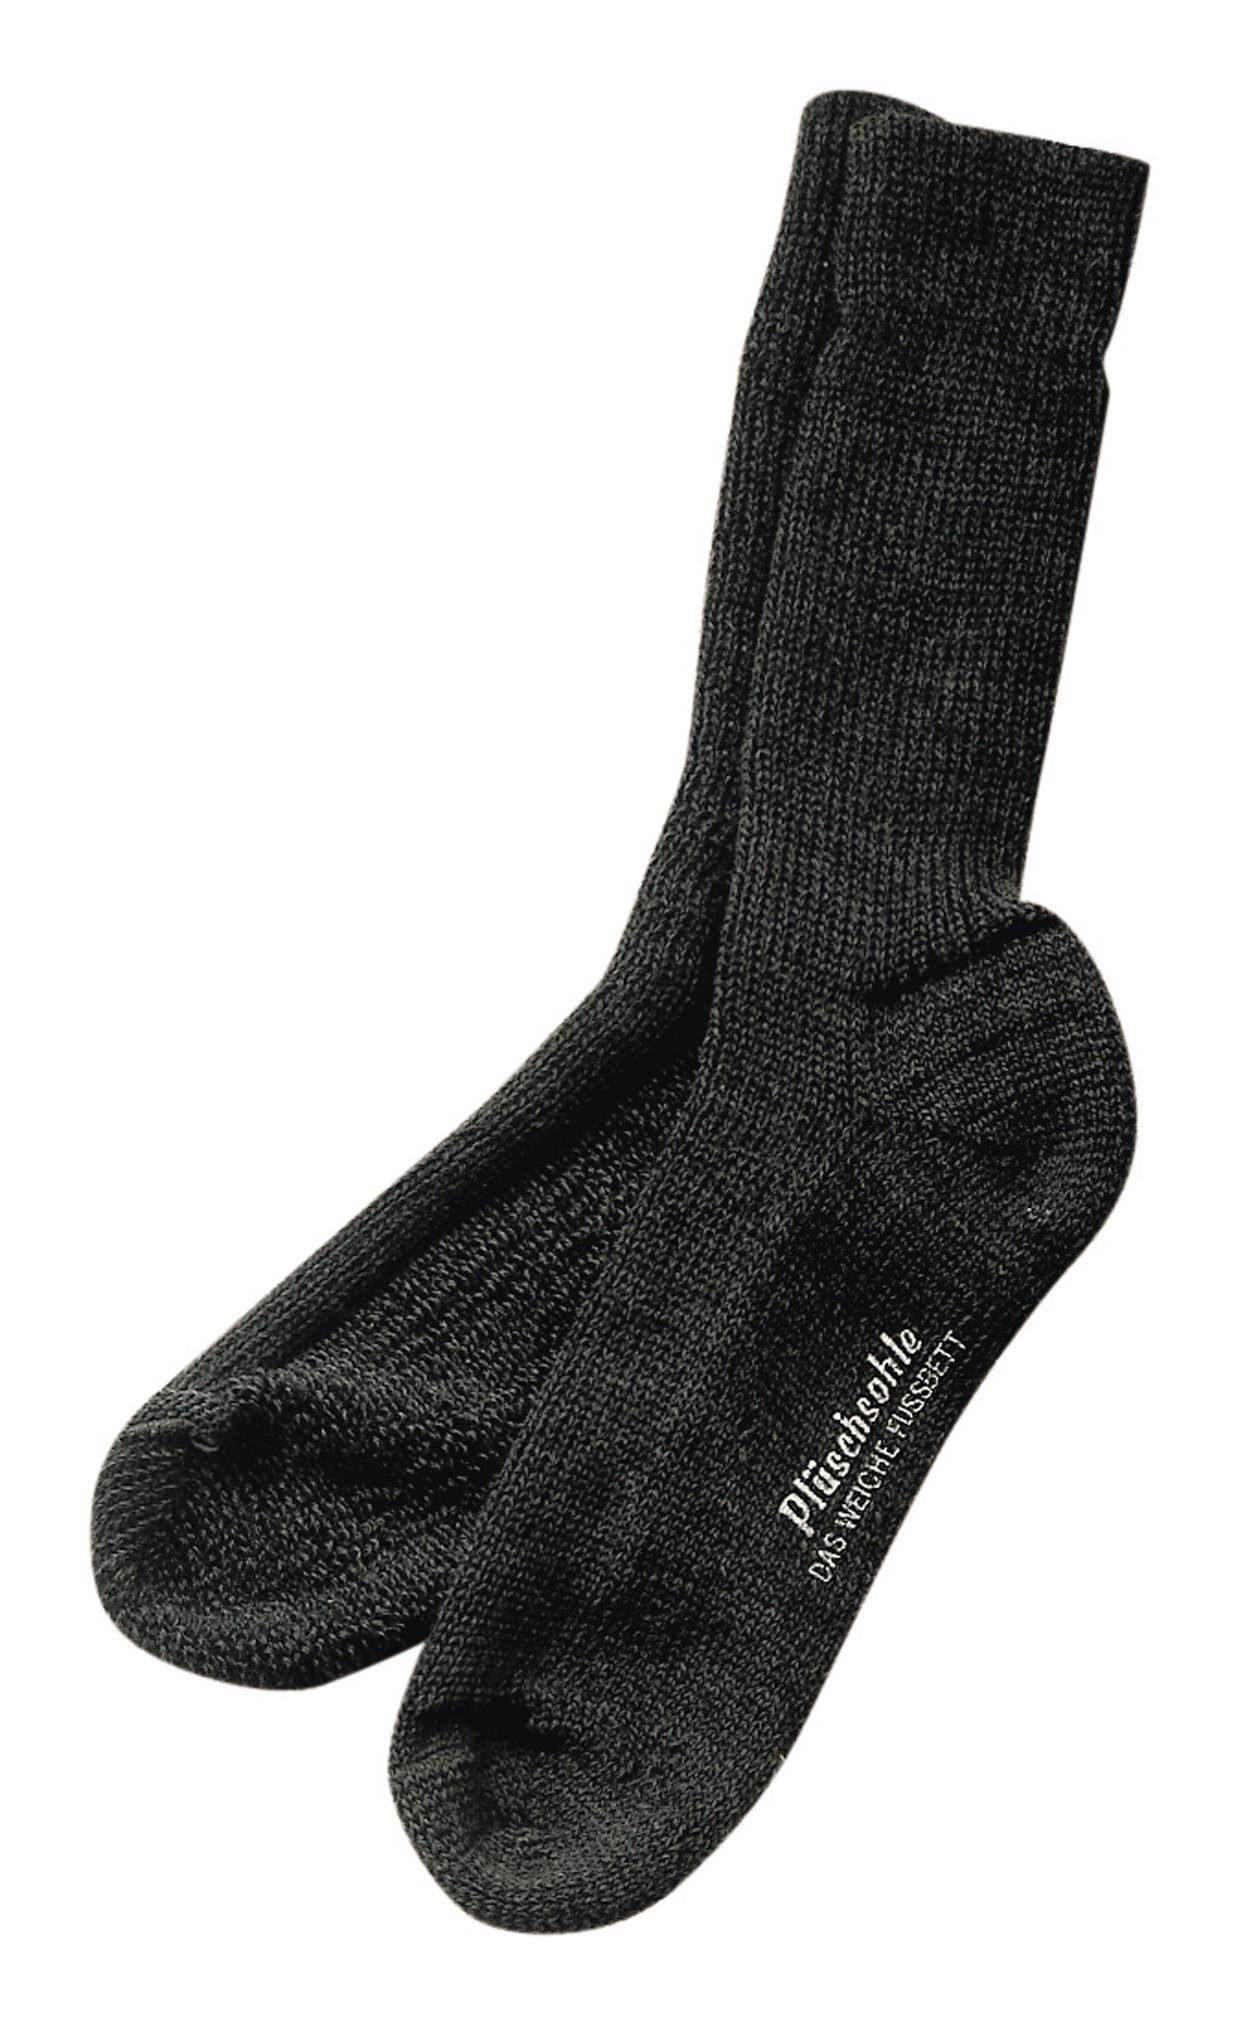 Gesundheitssocke fortis 46 45 Socken - Größe anthrazit